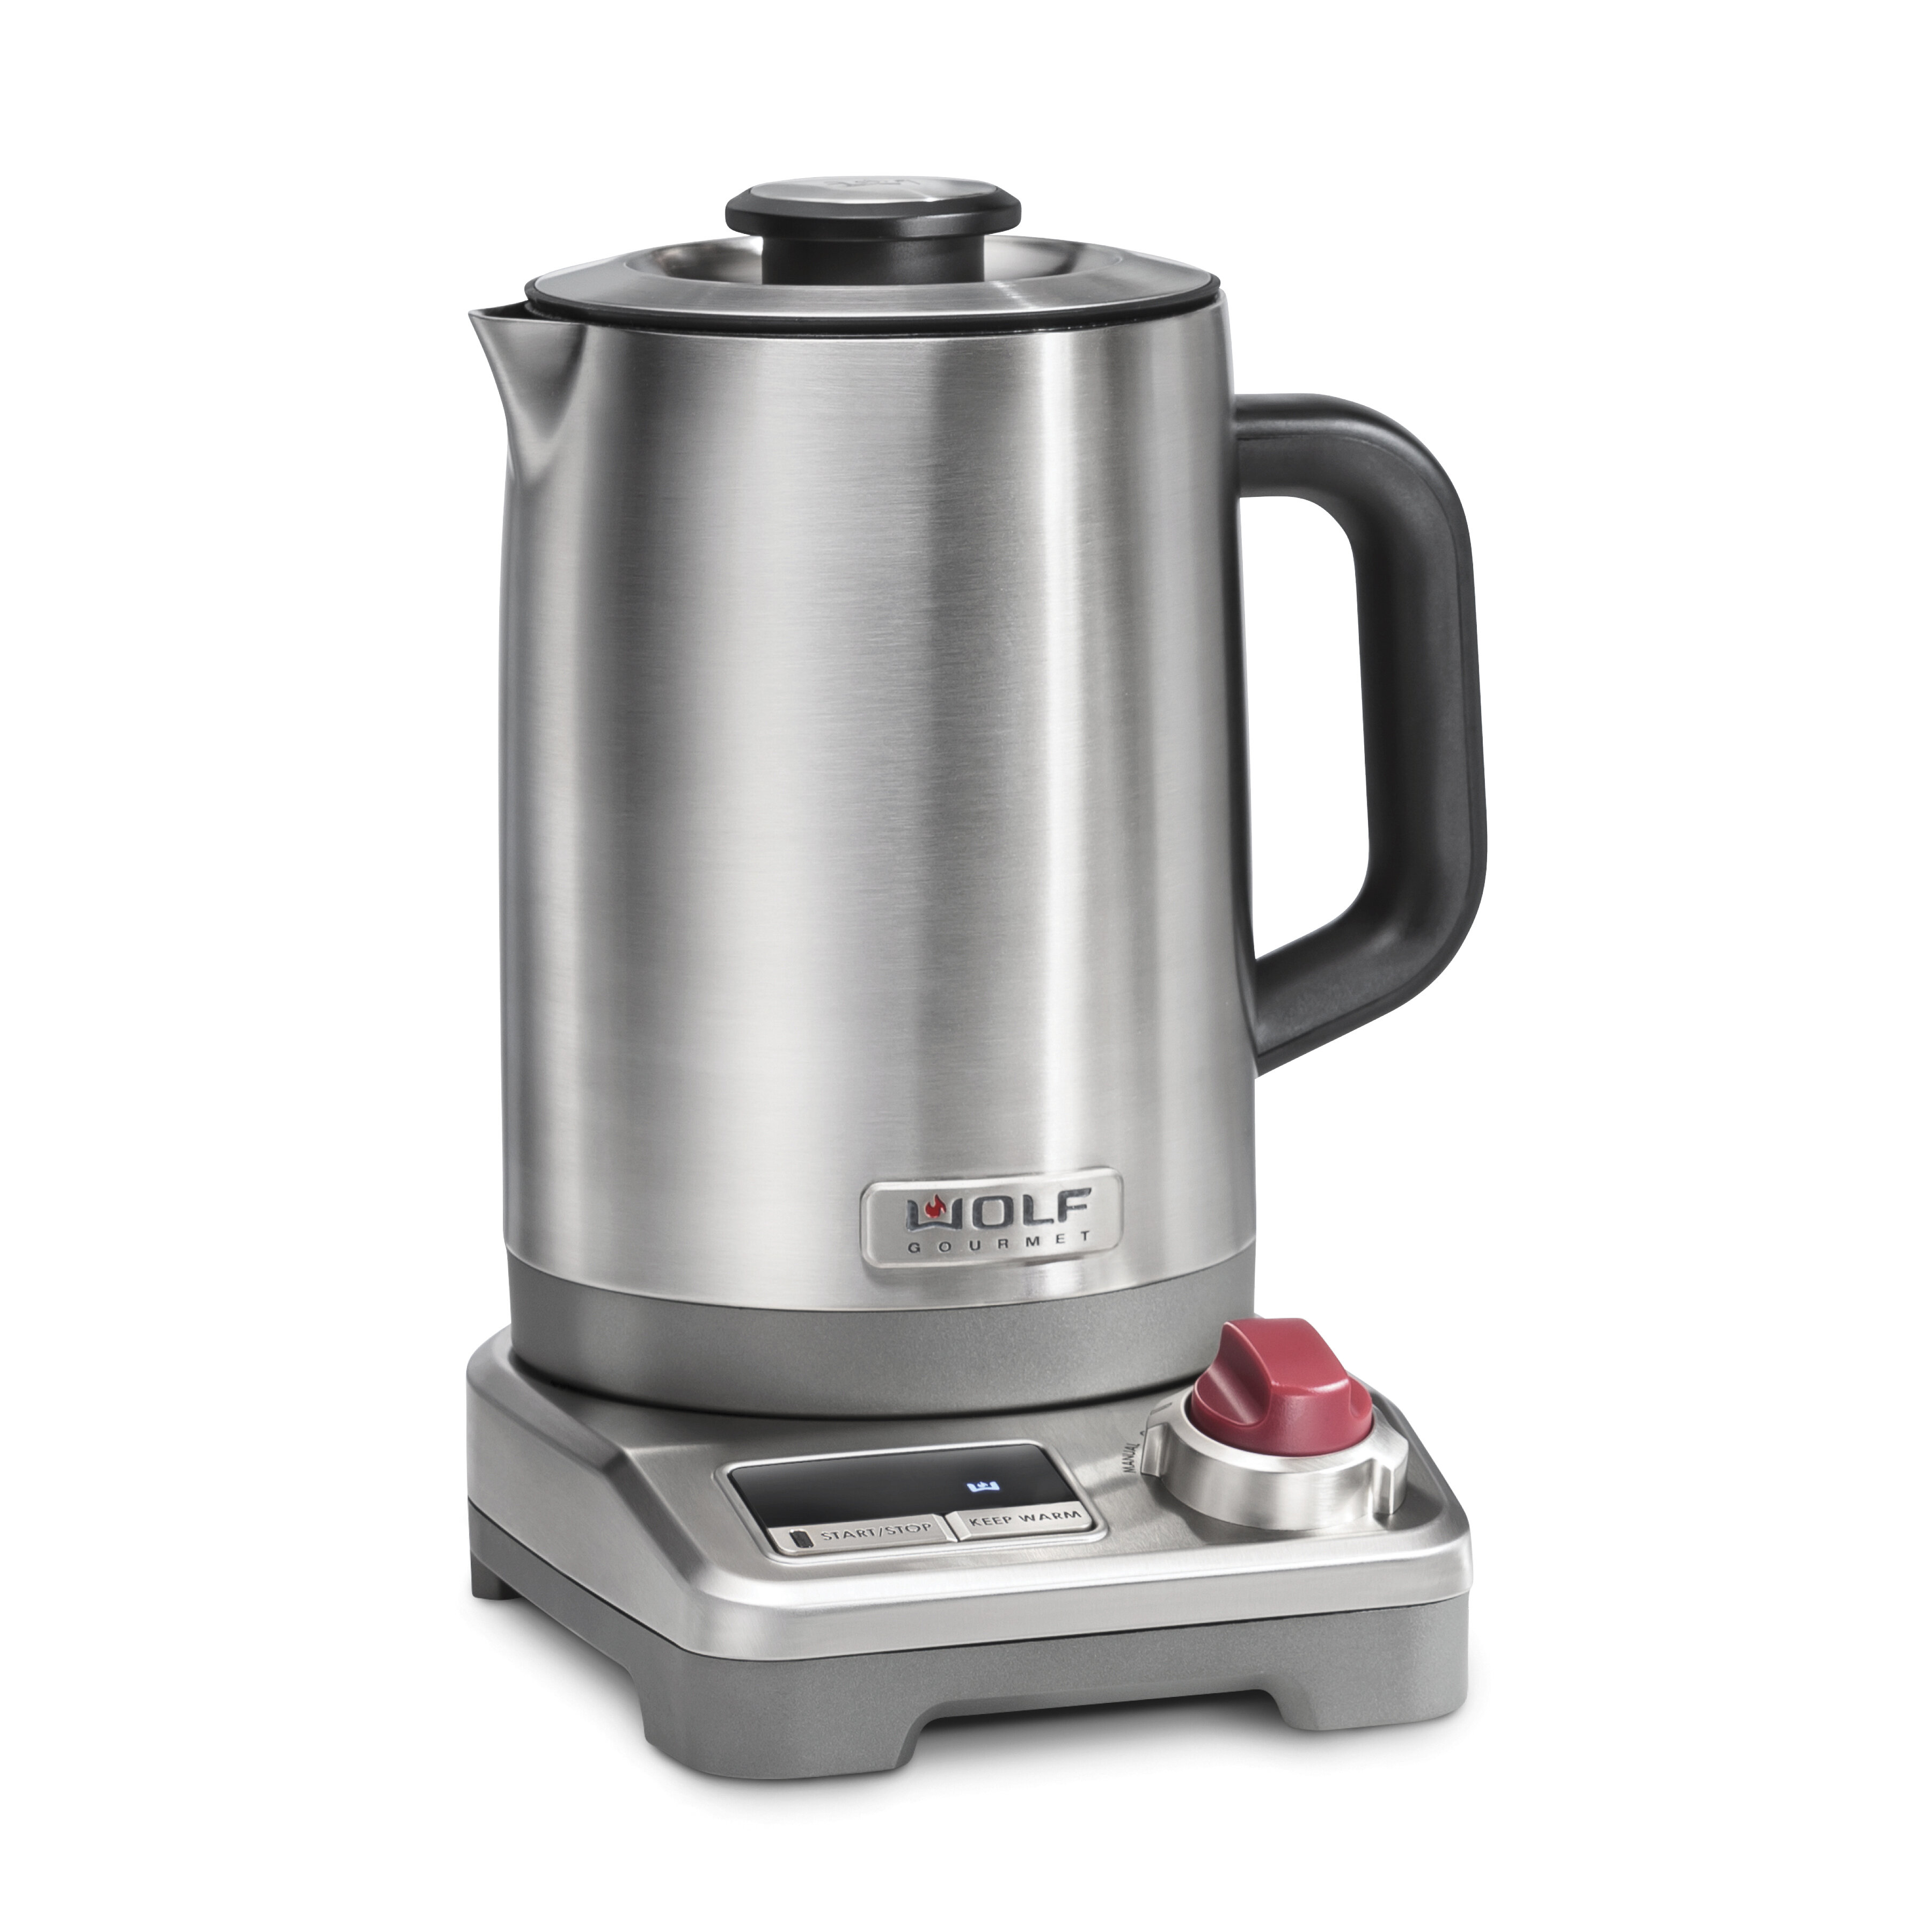 https://assets.wfcdn.com/im/79677039/compr-r85/1454/145460193/wolf-gourmet-16-qt-stainless-steel-electric-tea-kettle.jpg